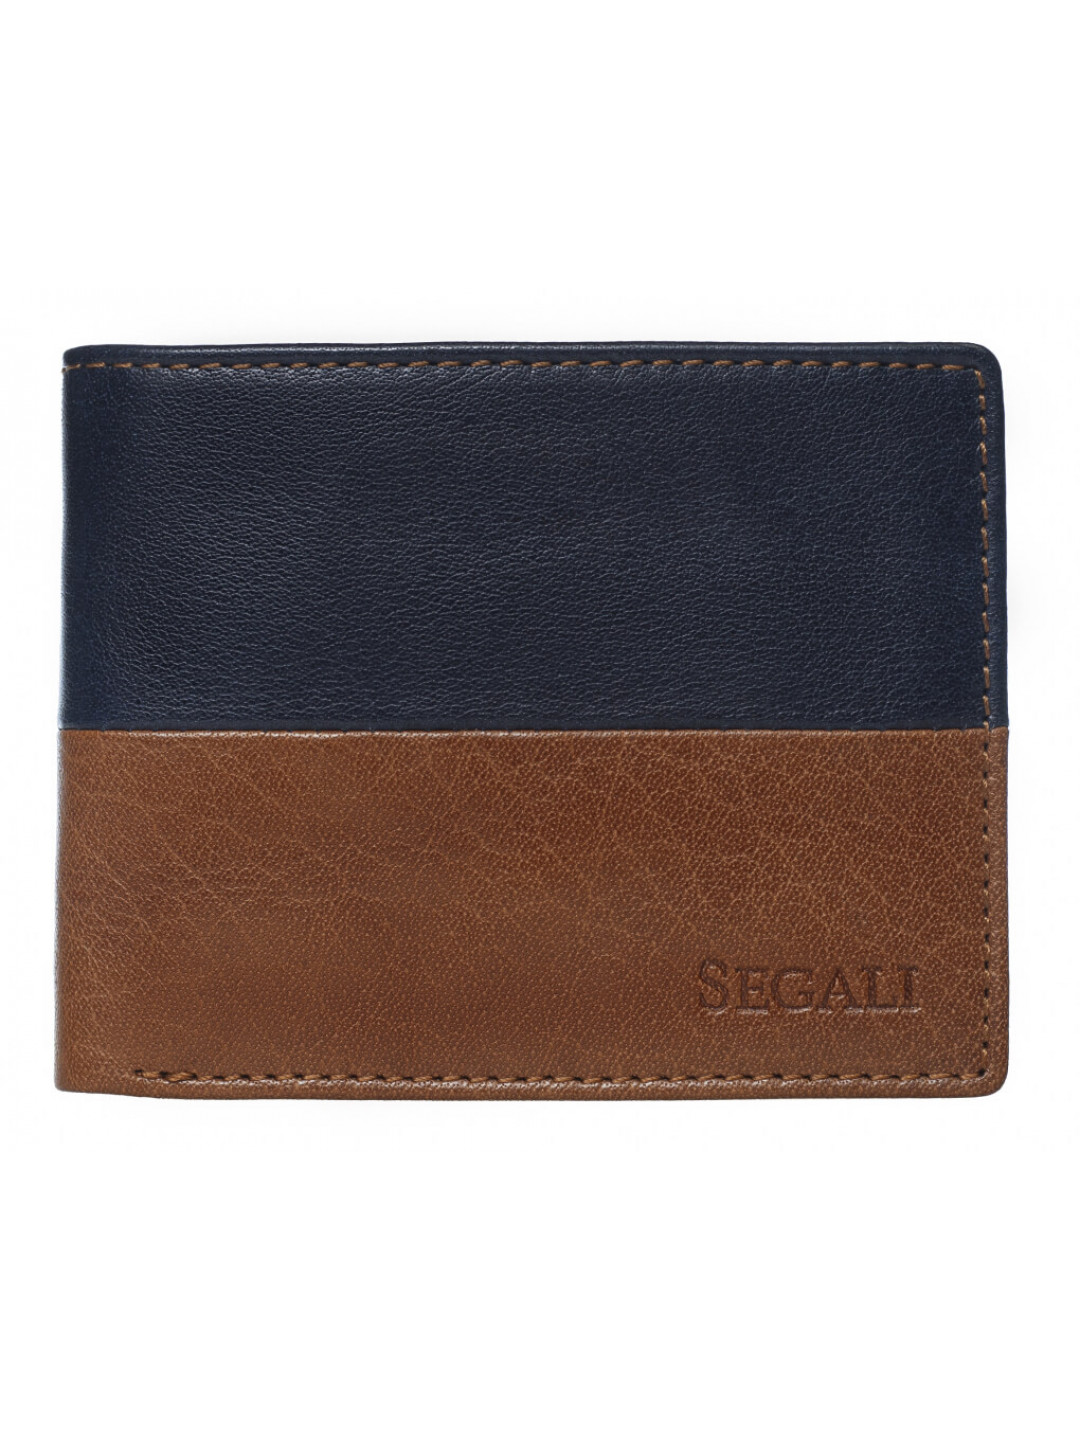 SEGALI Pánská kožená peněženka 80892 cognac blue